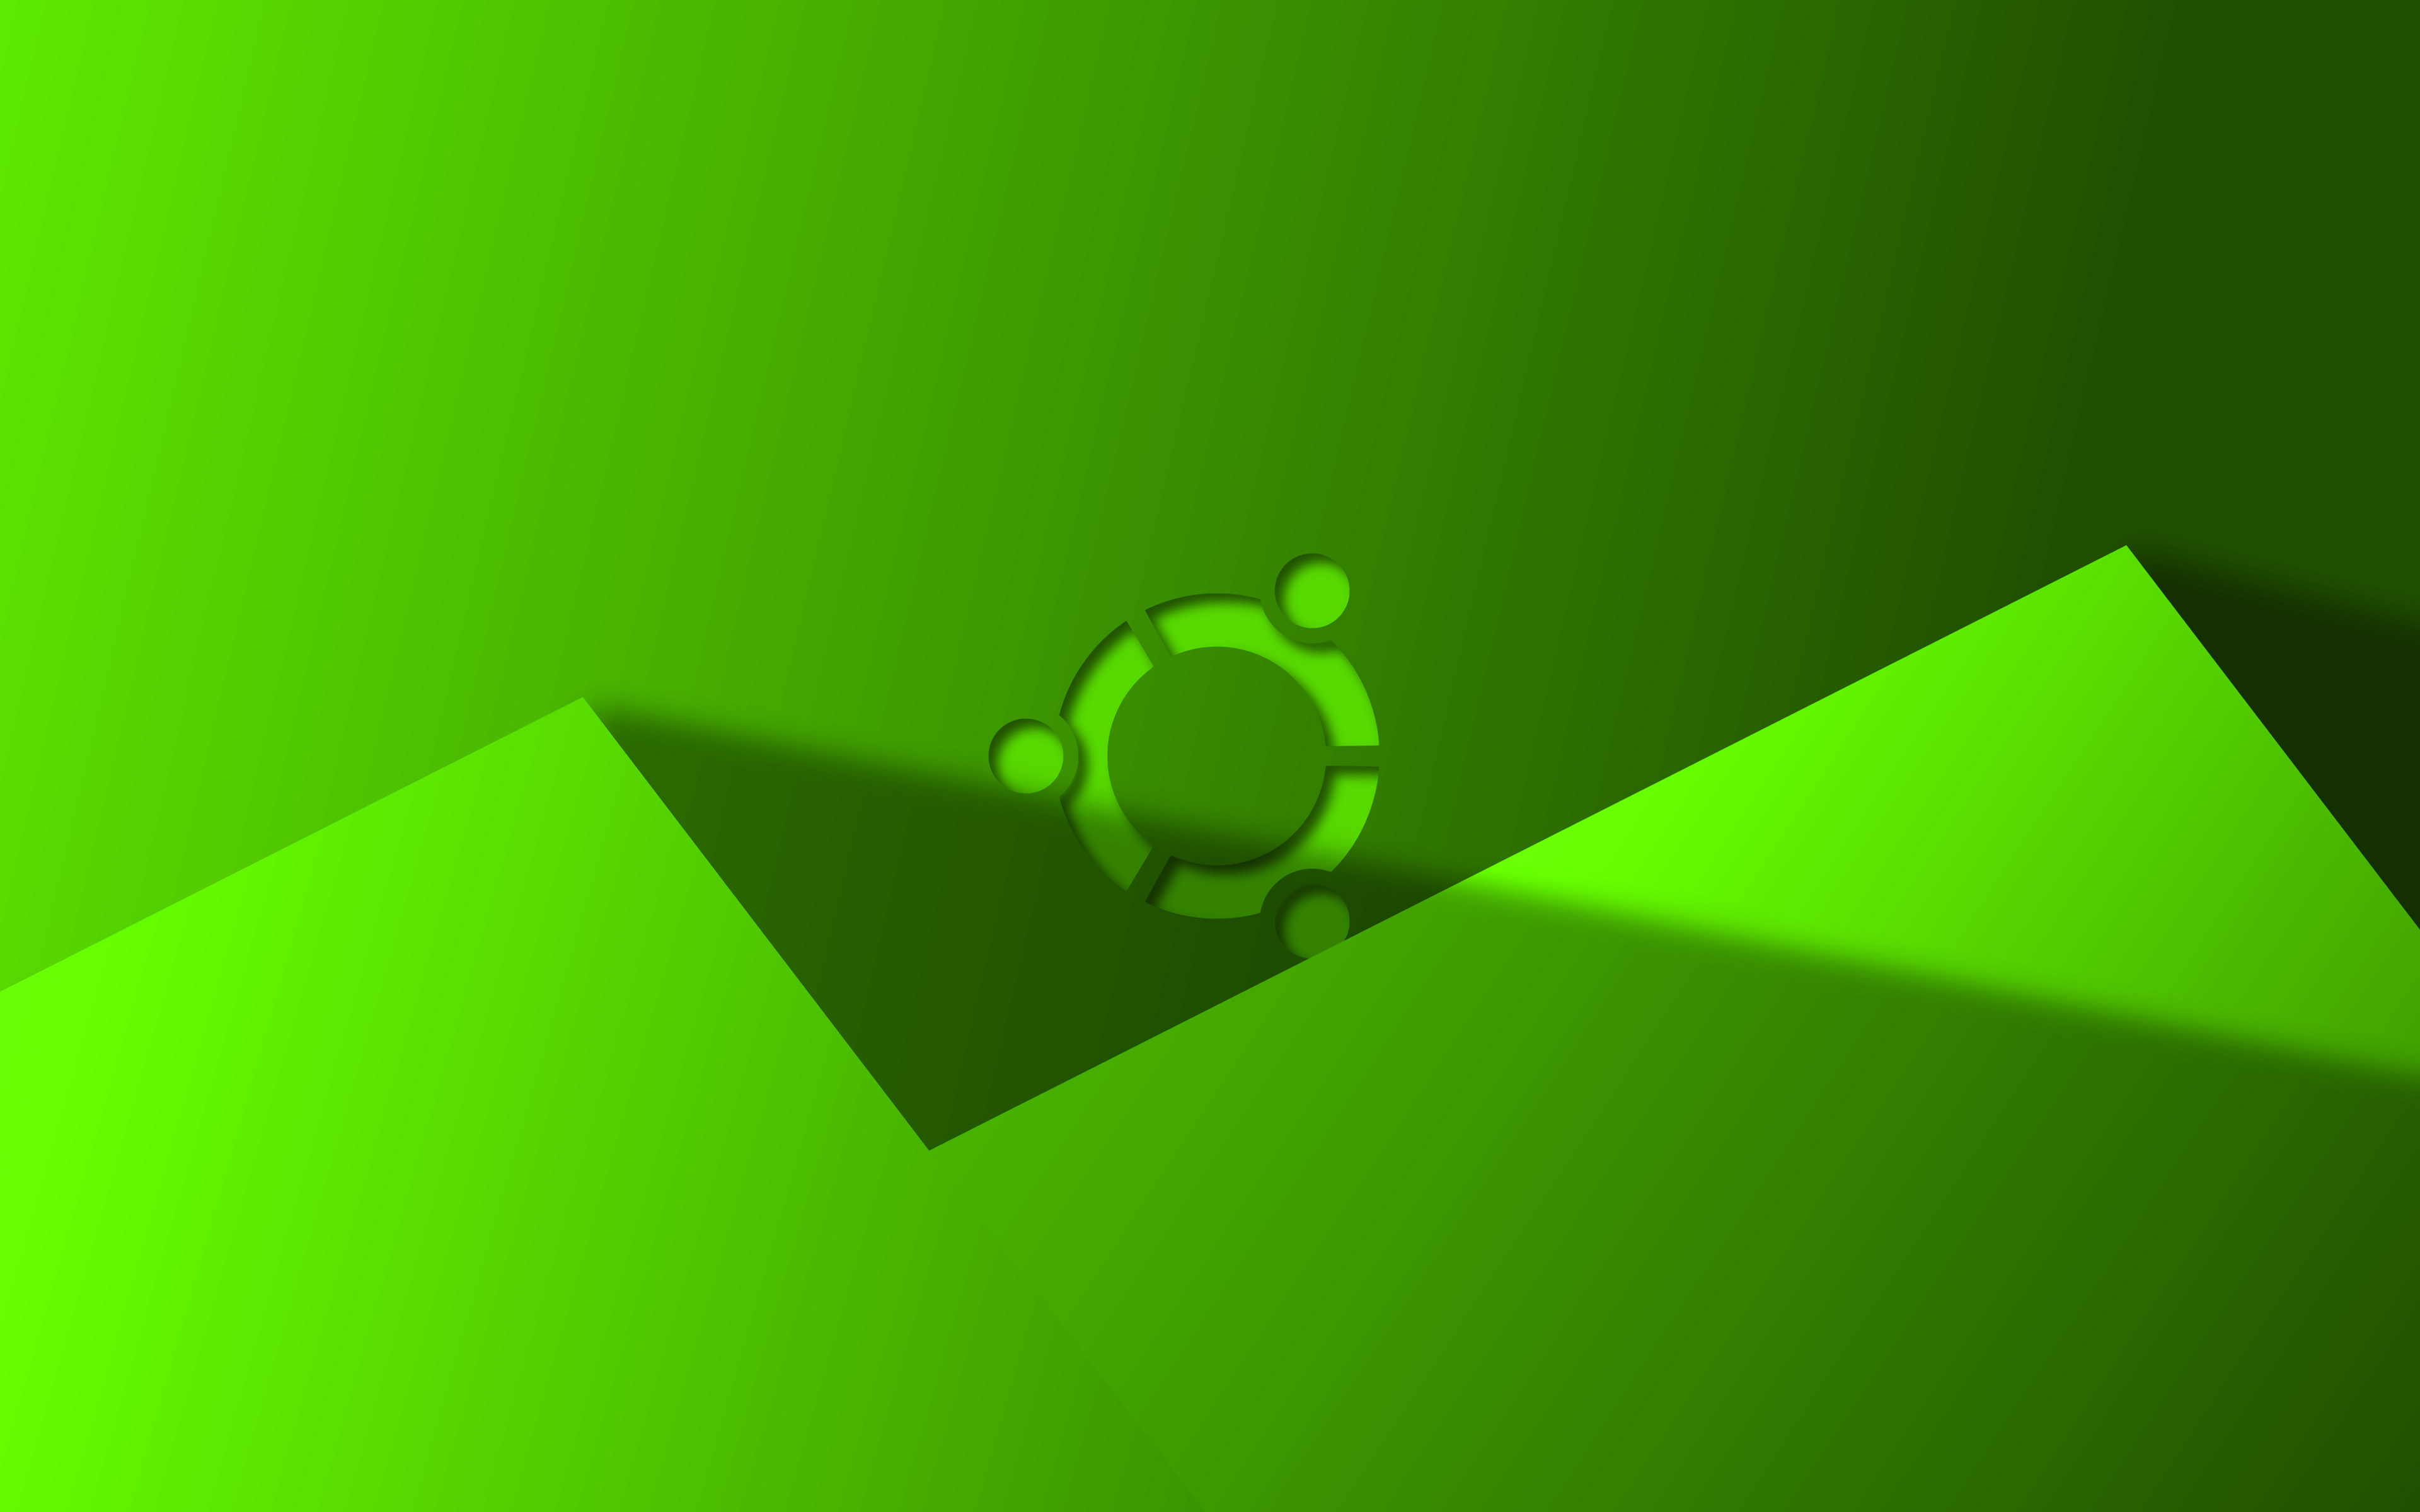 ダウンロード画像 Ubuntuグリーン シンボルマーク 4k 創造 Linux グリーン素材デザイン Ubuntuロゴ ブランド Ubuntu 画面の解像度 3840x2400 壁紙デスクトップ上